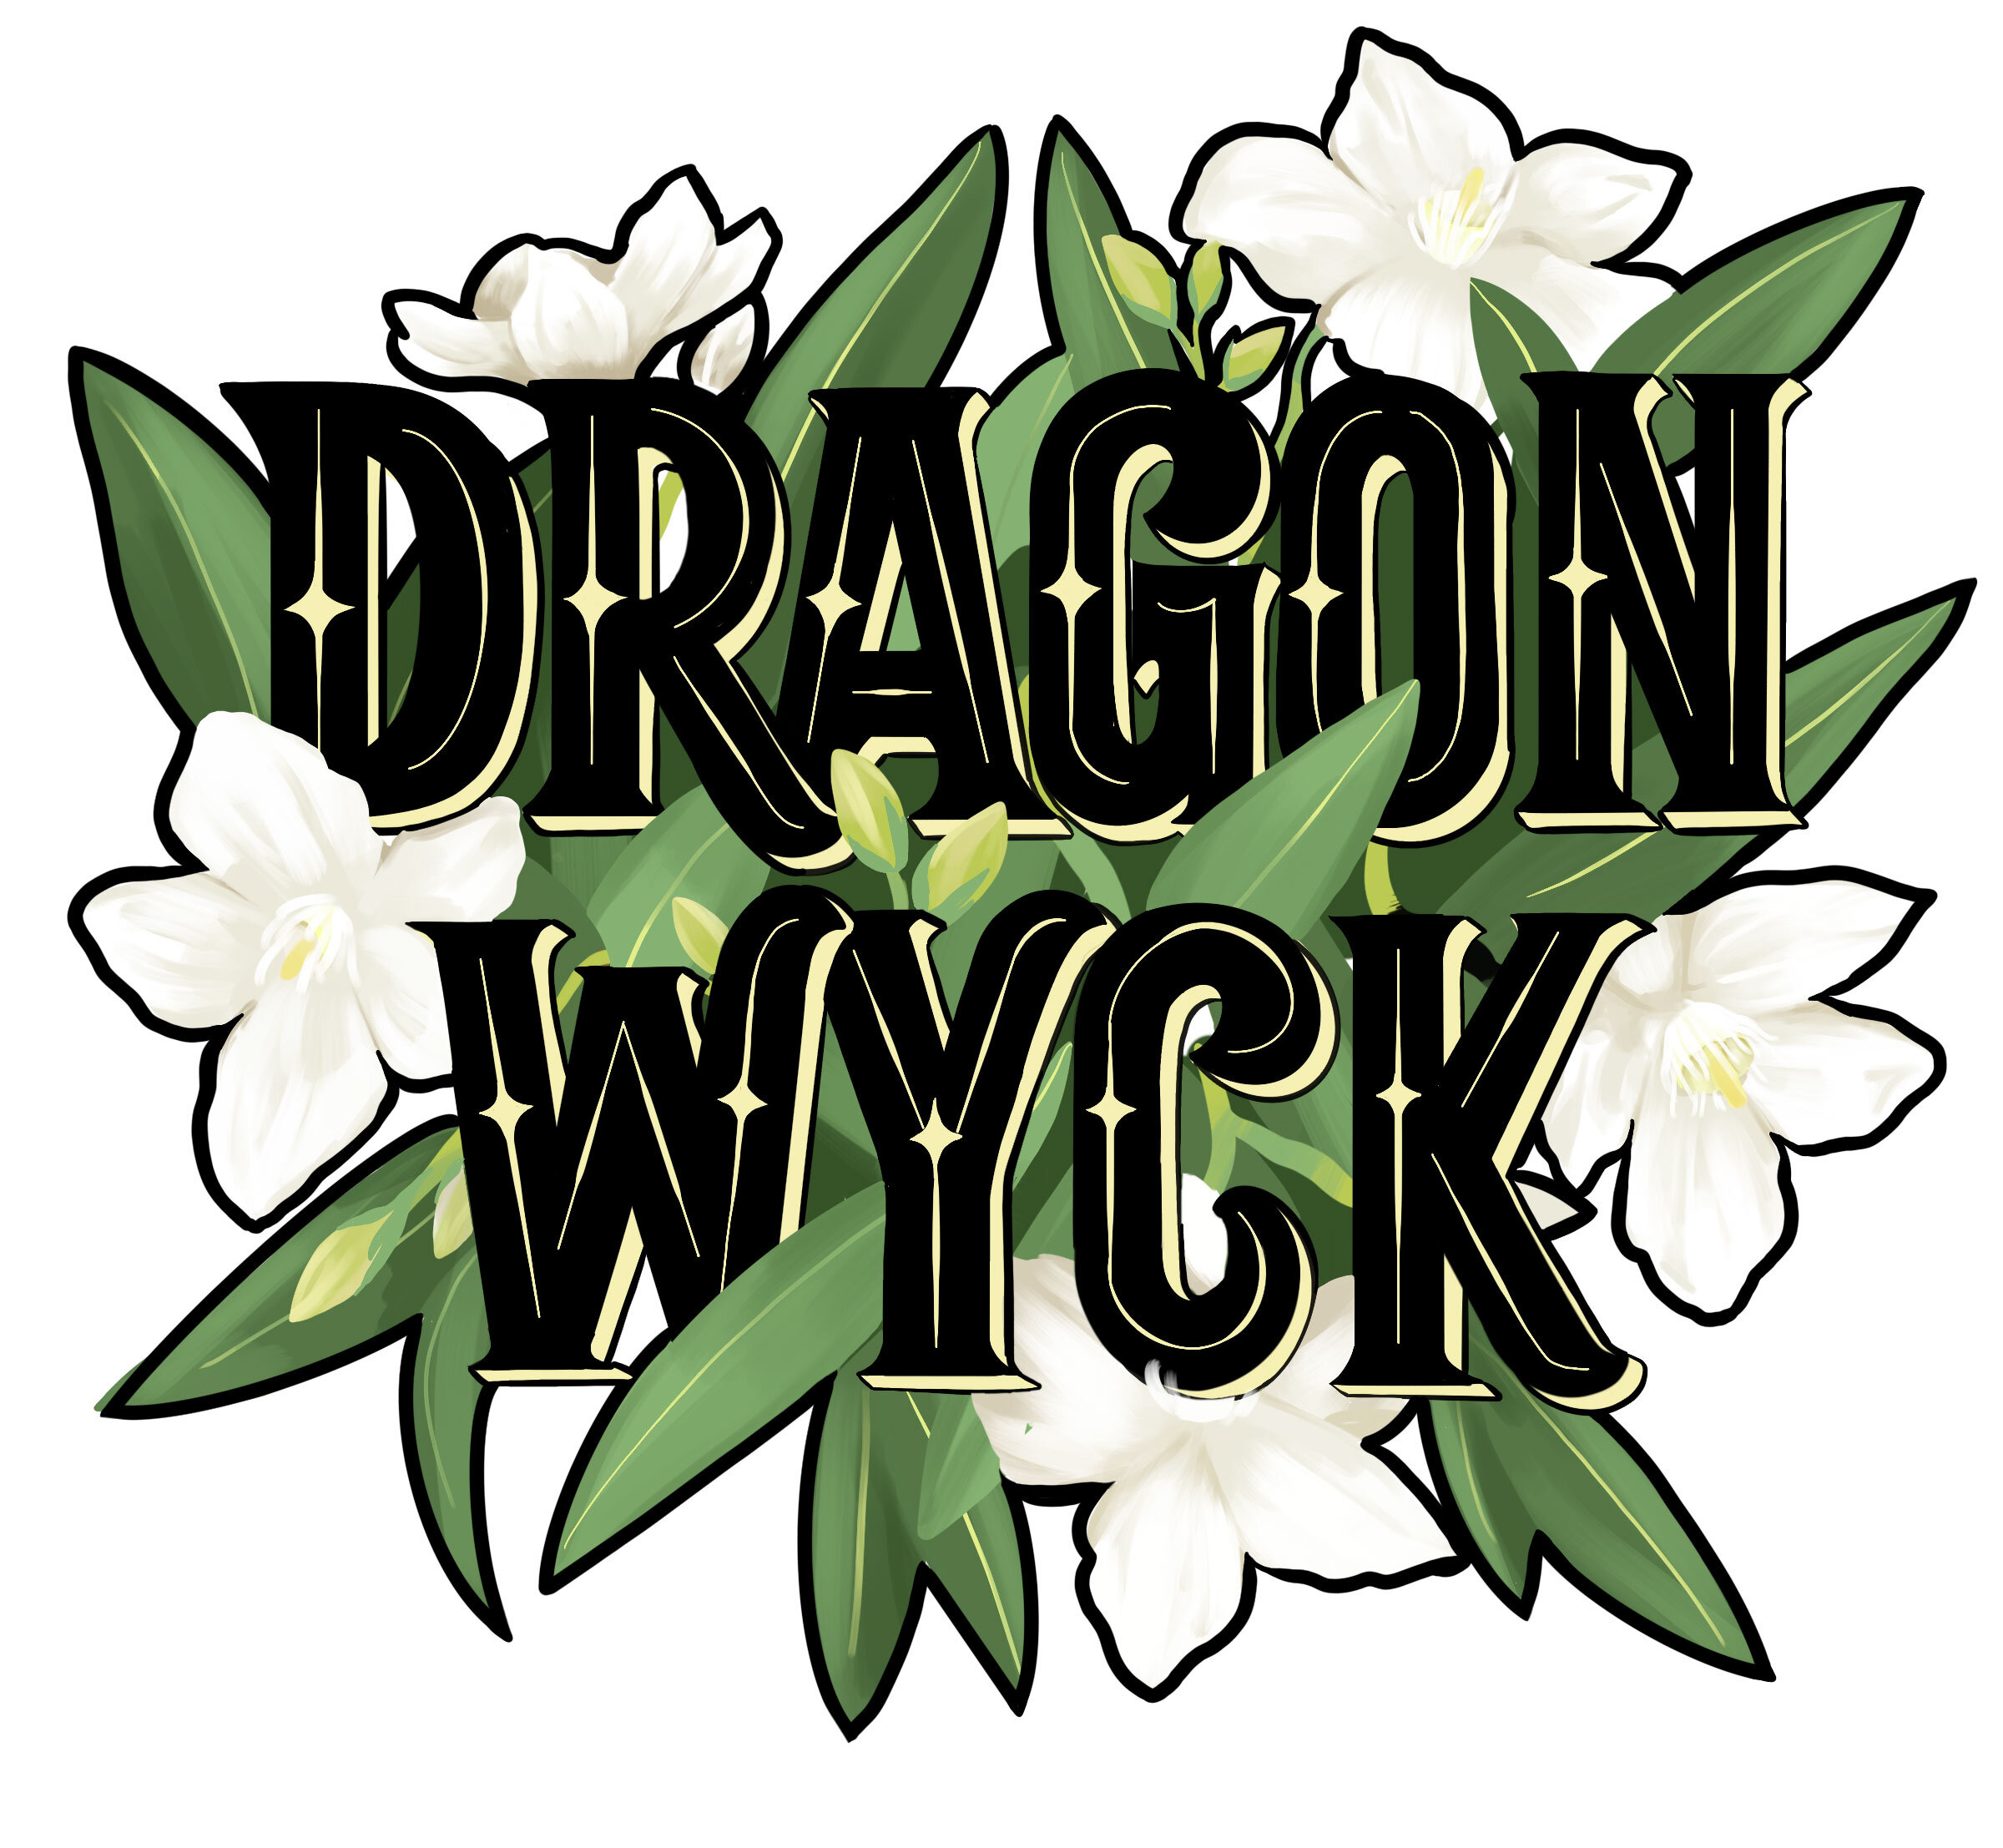 Dragonwyck-flower.jpg